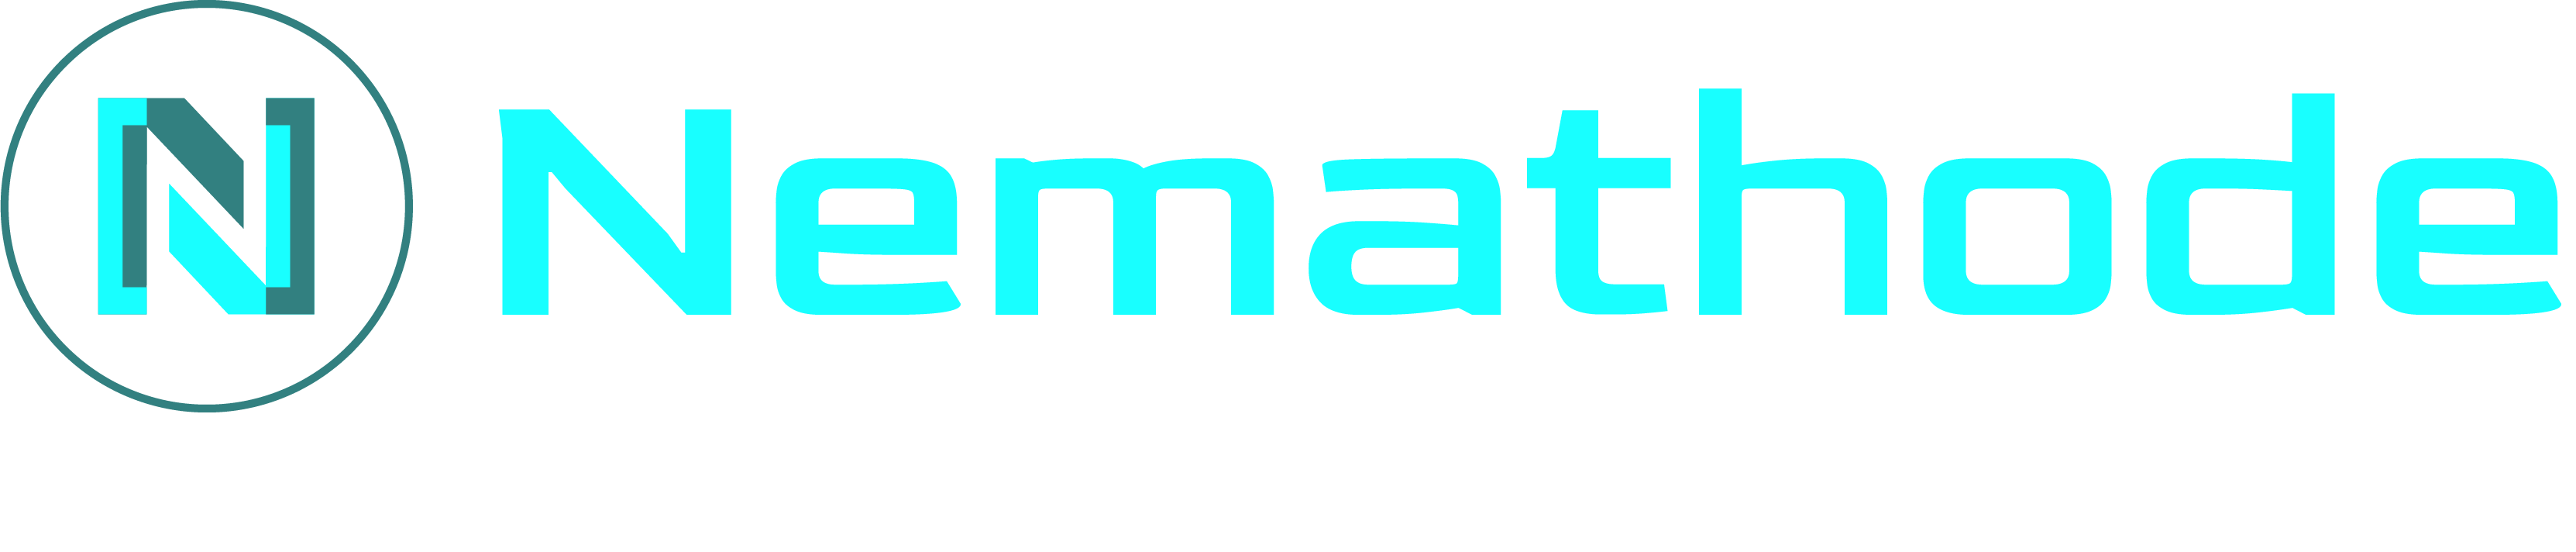 Nemathode logo